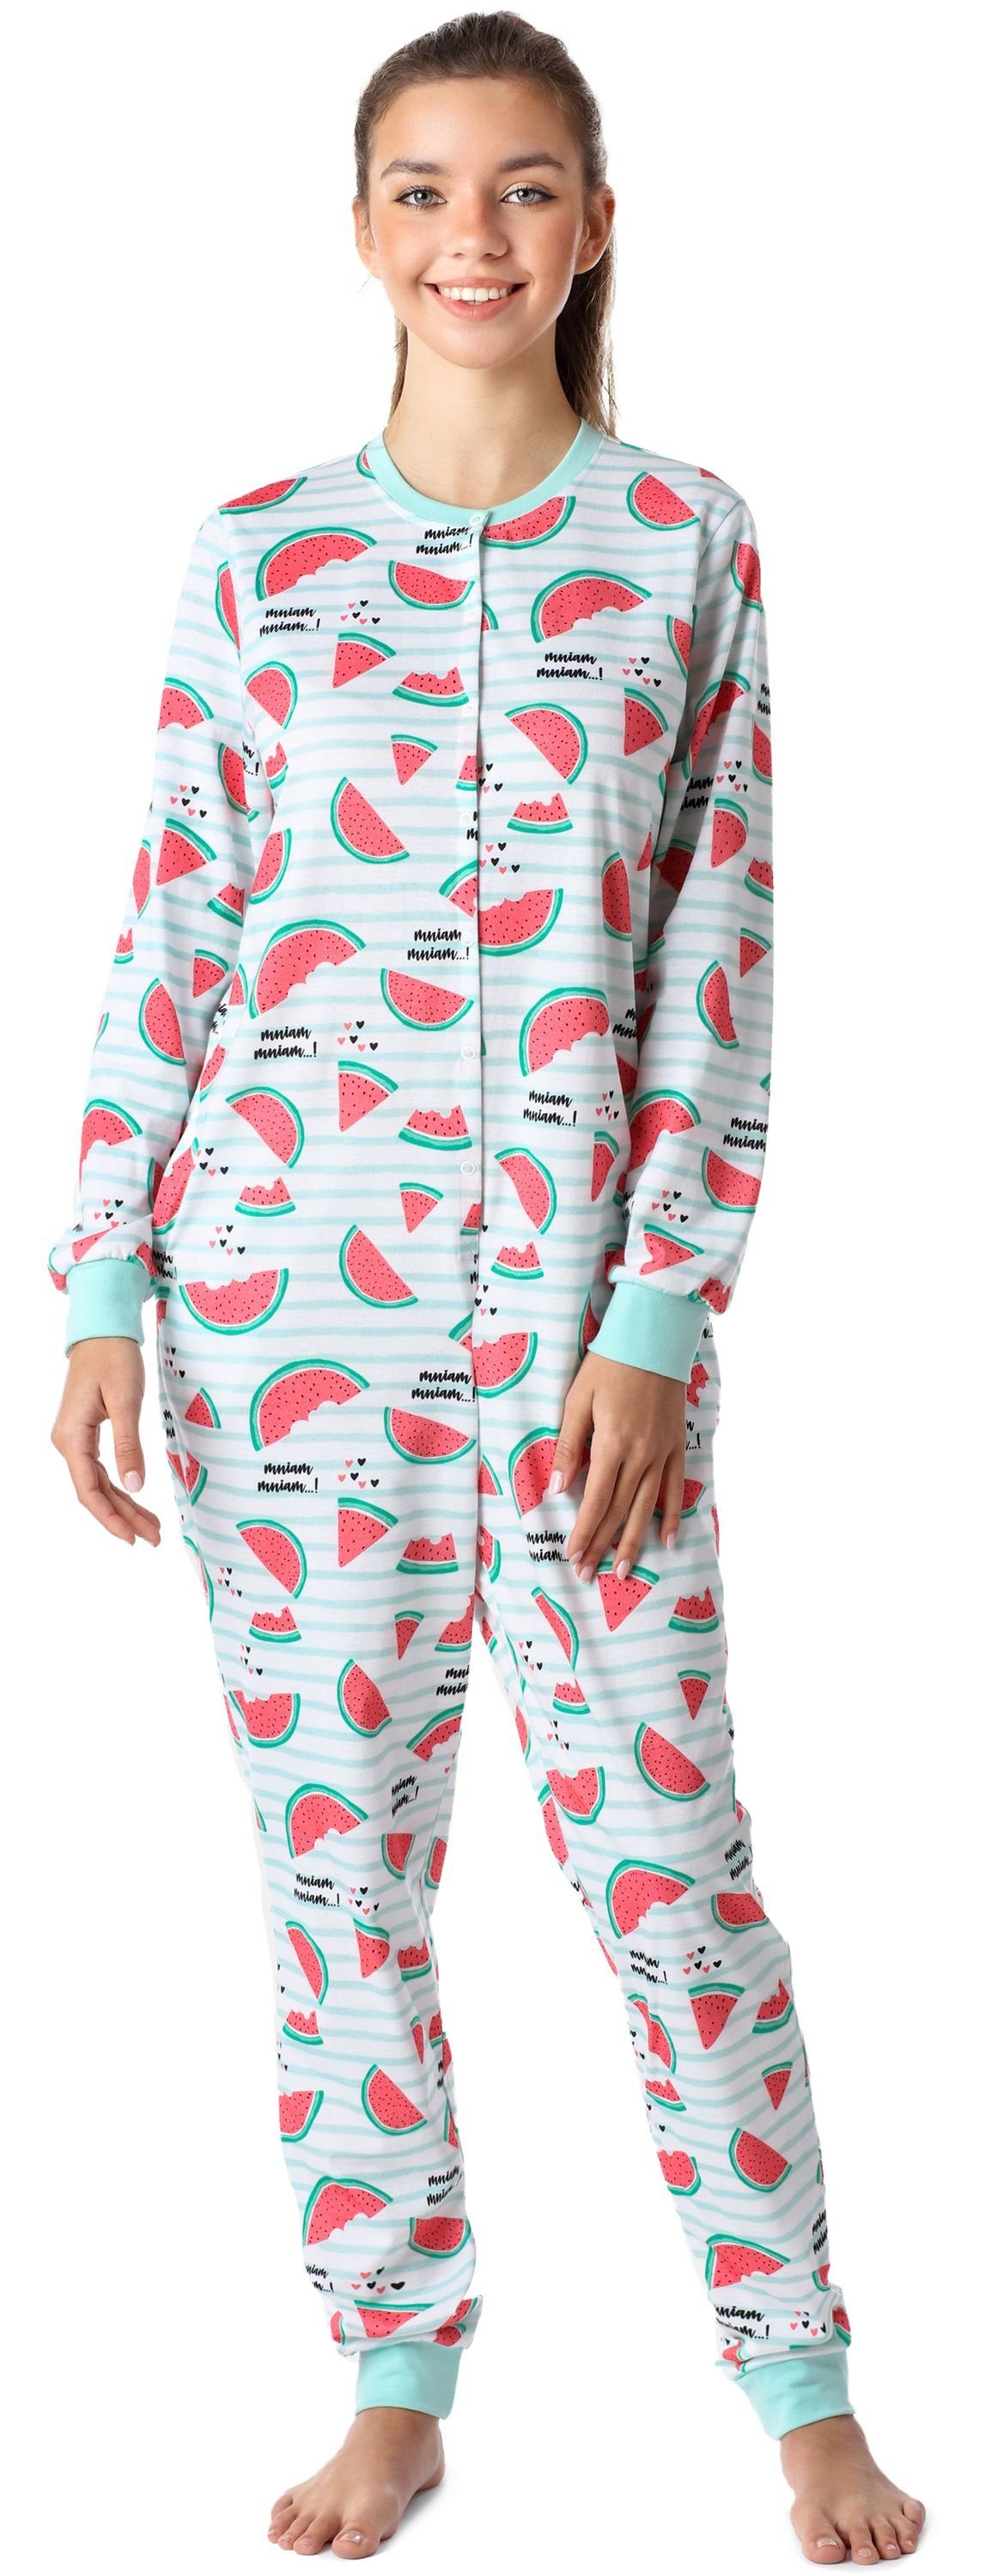 Merry Style Schlafanzug Mädchen Jugend Schlafanzug Schlafoverall MS10-335 Minze/Wassermelone